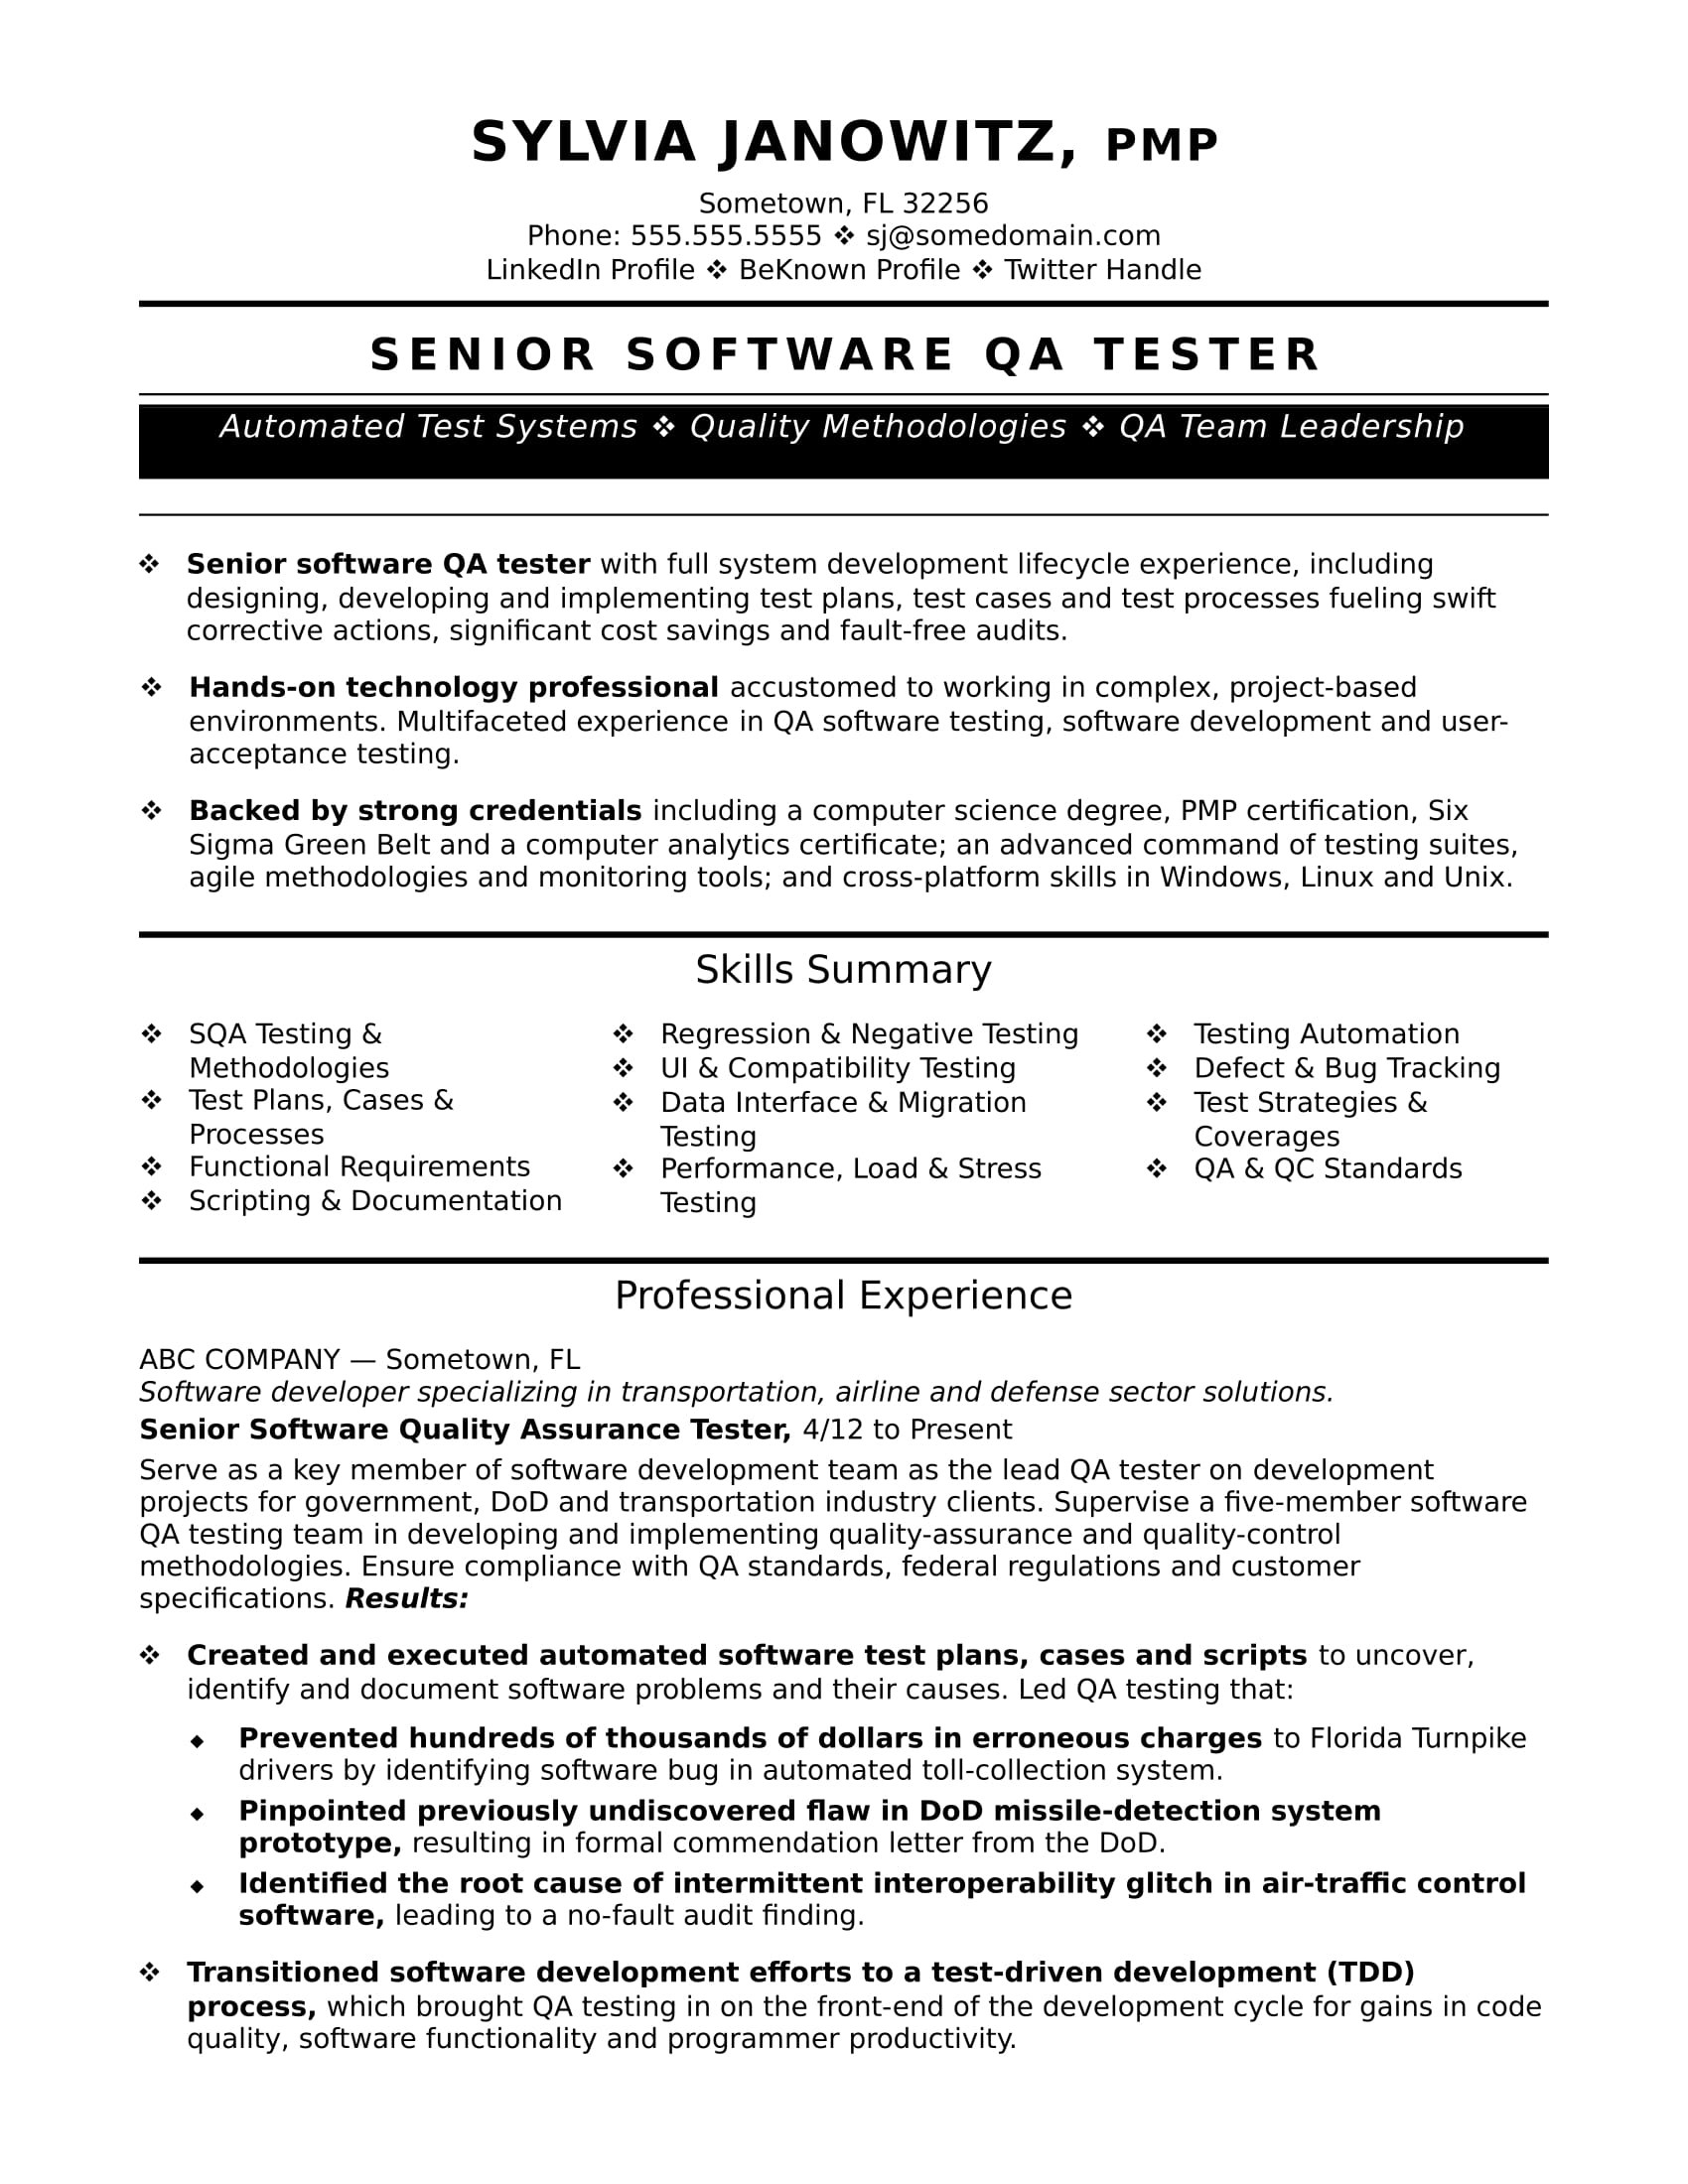 Selenium Testing Resume Sample for 2 Years Experience Experienced Qa software Tester Resume Sample Monster.com